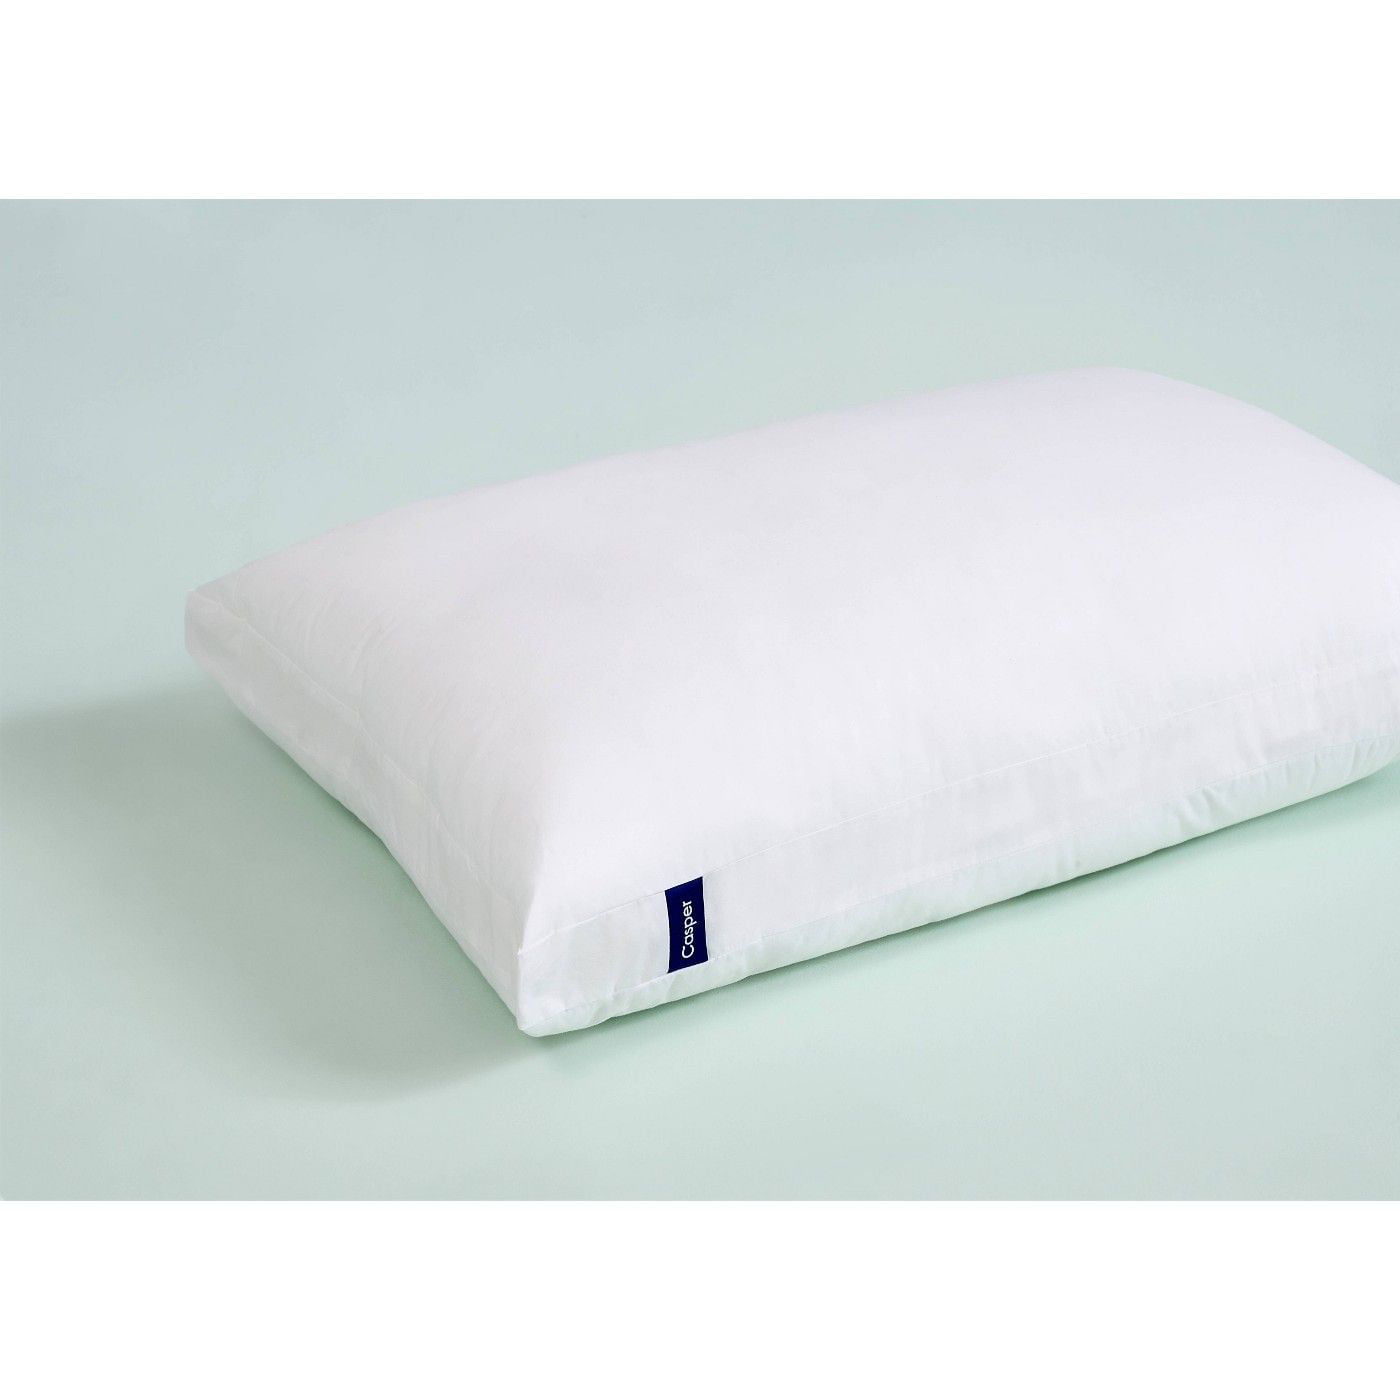 Casper Sleep Pillow Dual-layer Design 